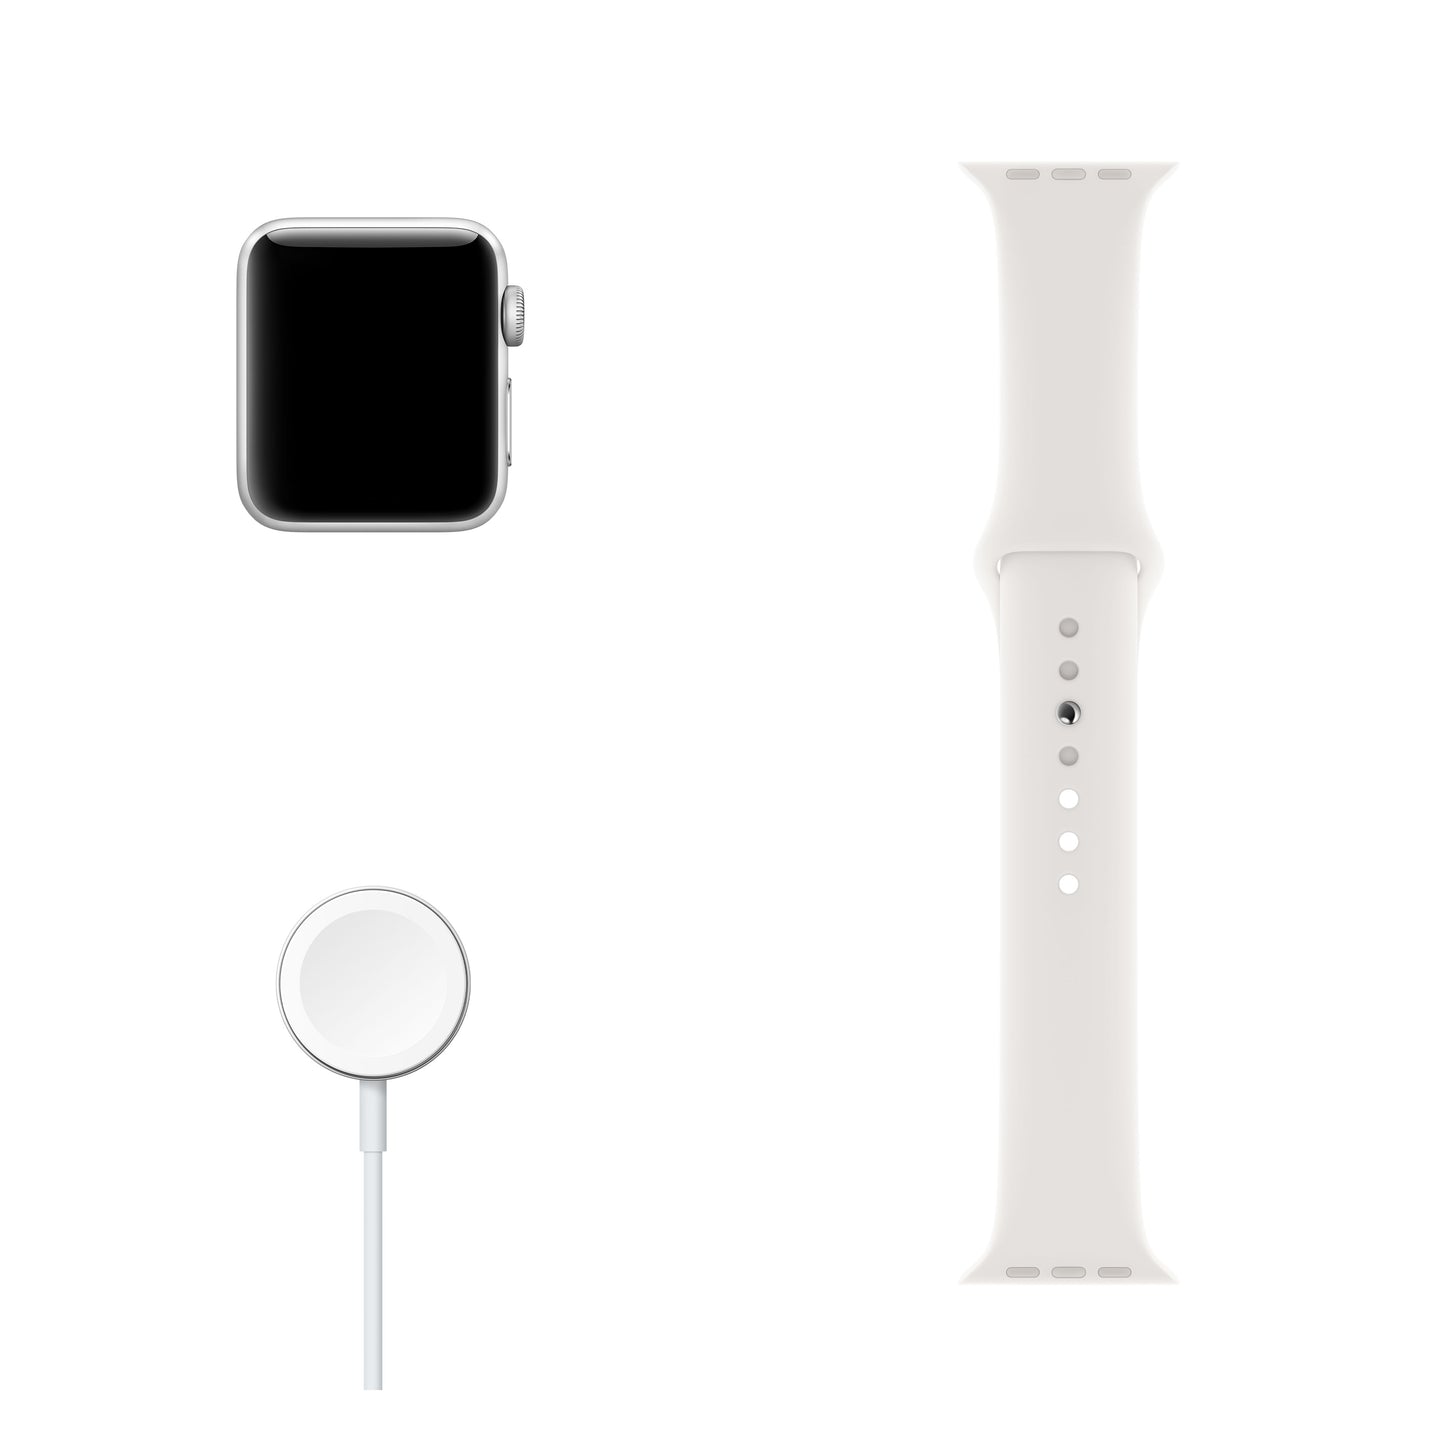 Apple Watch Series 3 (GPS) con caja de 42 mm de aluminio en plata y correa deportiva blanca